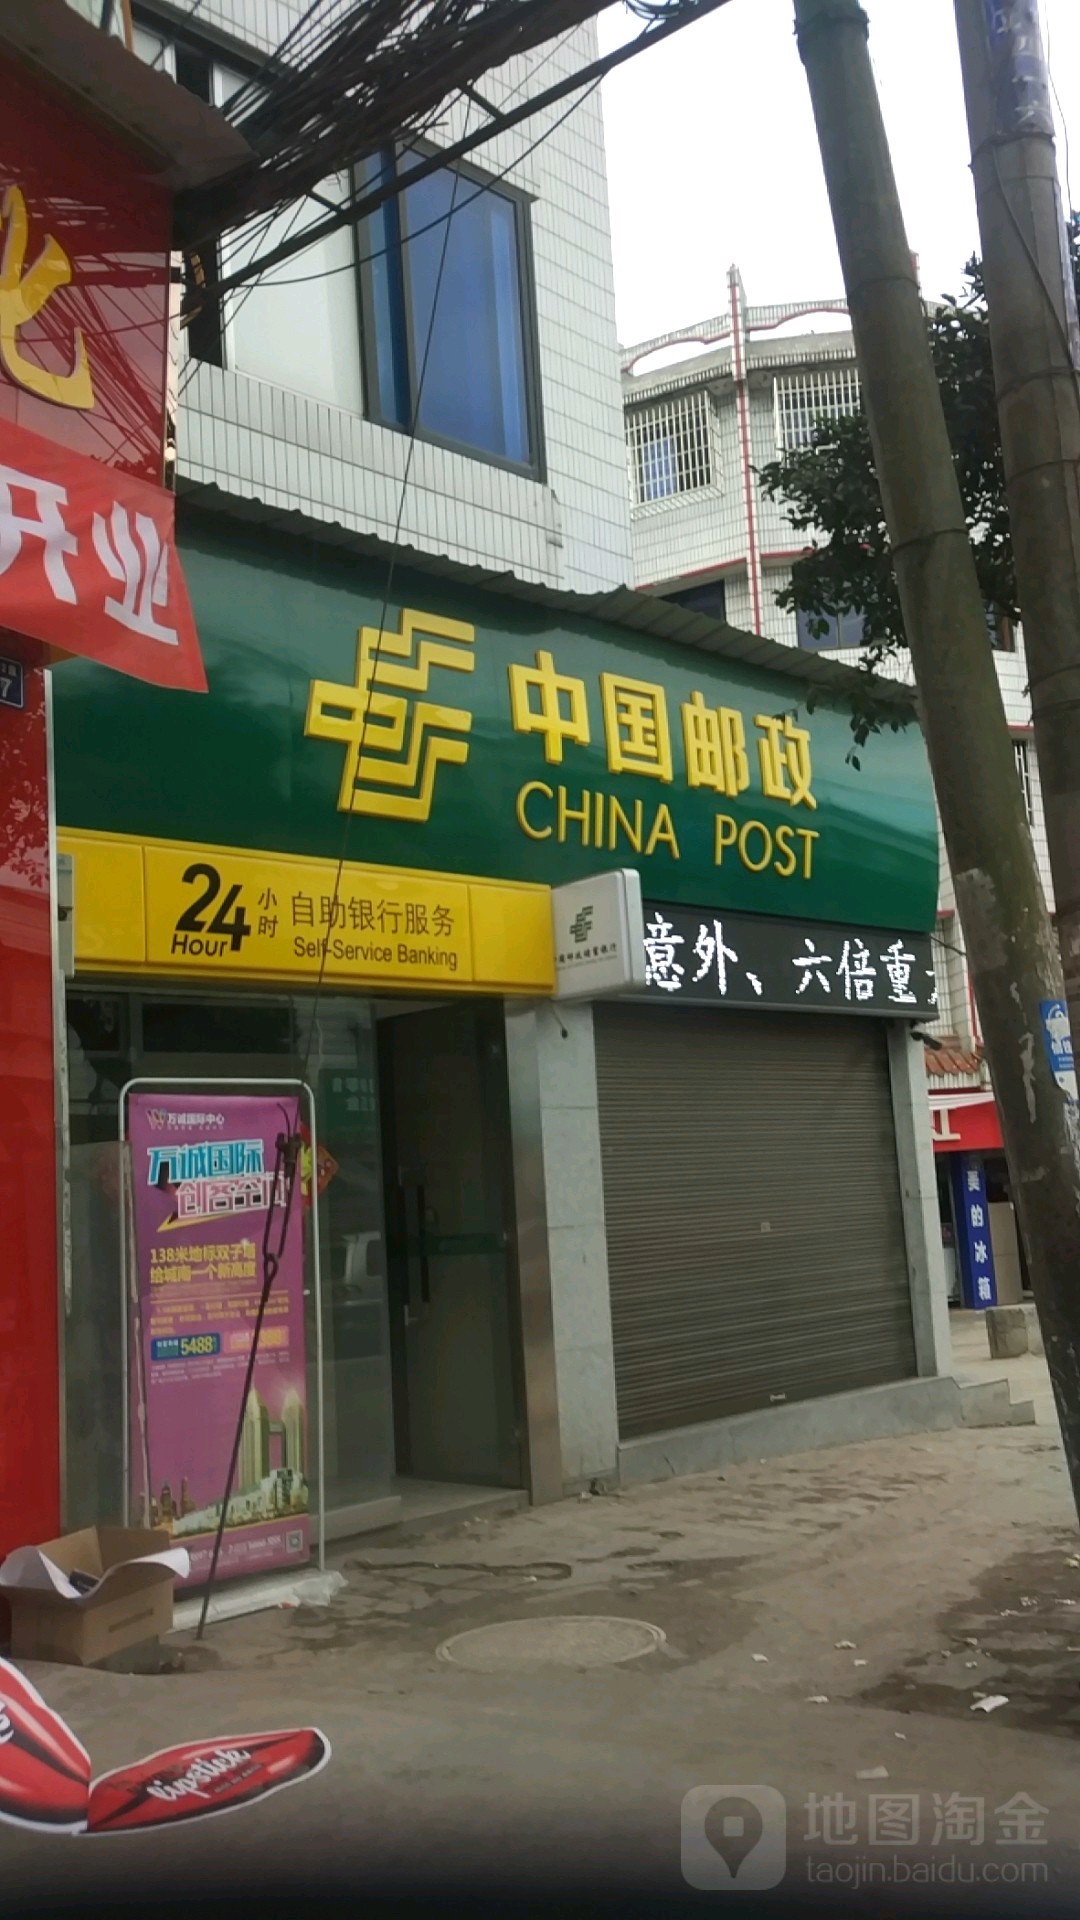 中國郵政儲蓄銀行24小時自助銀行(瀘縣立石郵政儲蓄所)